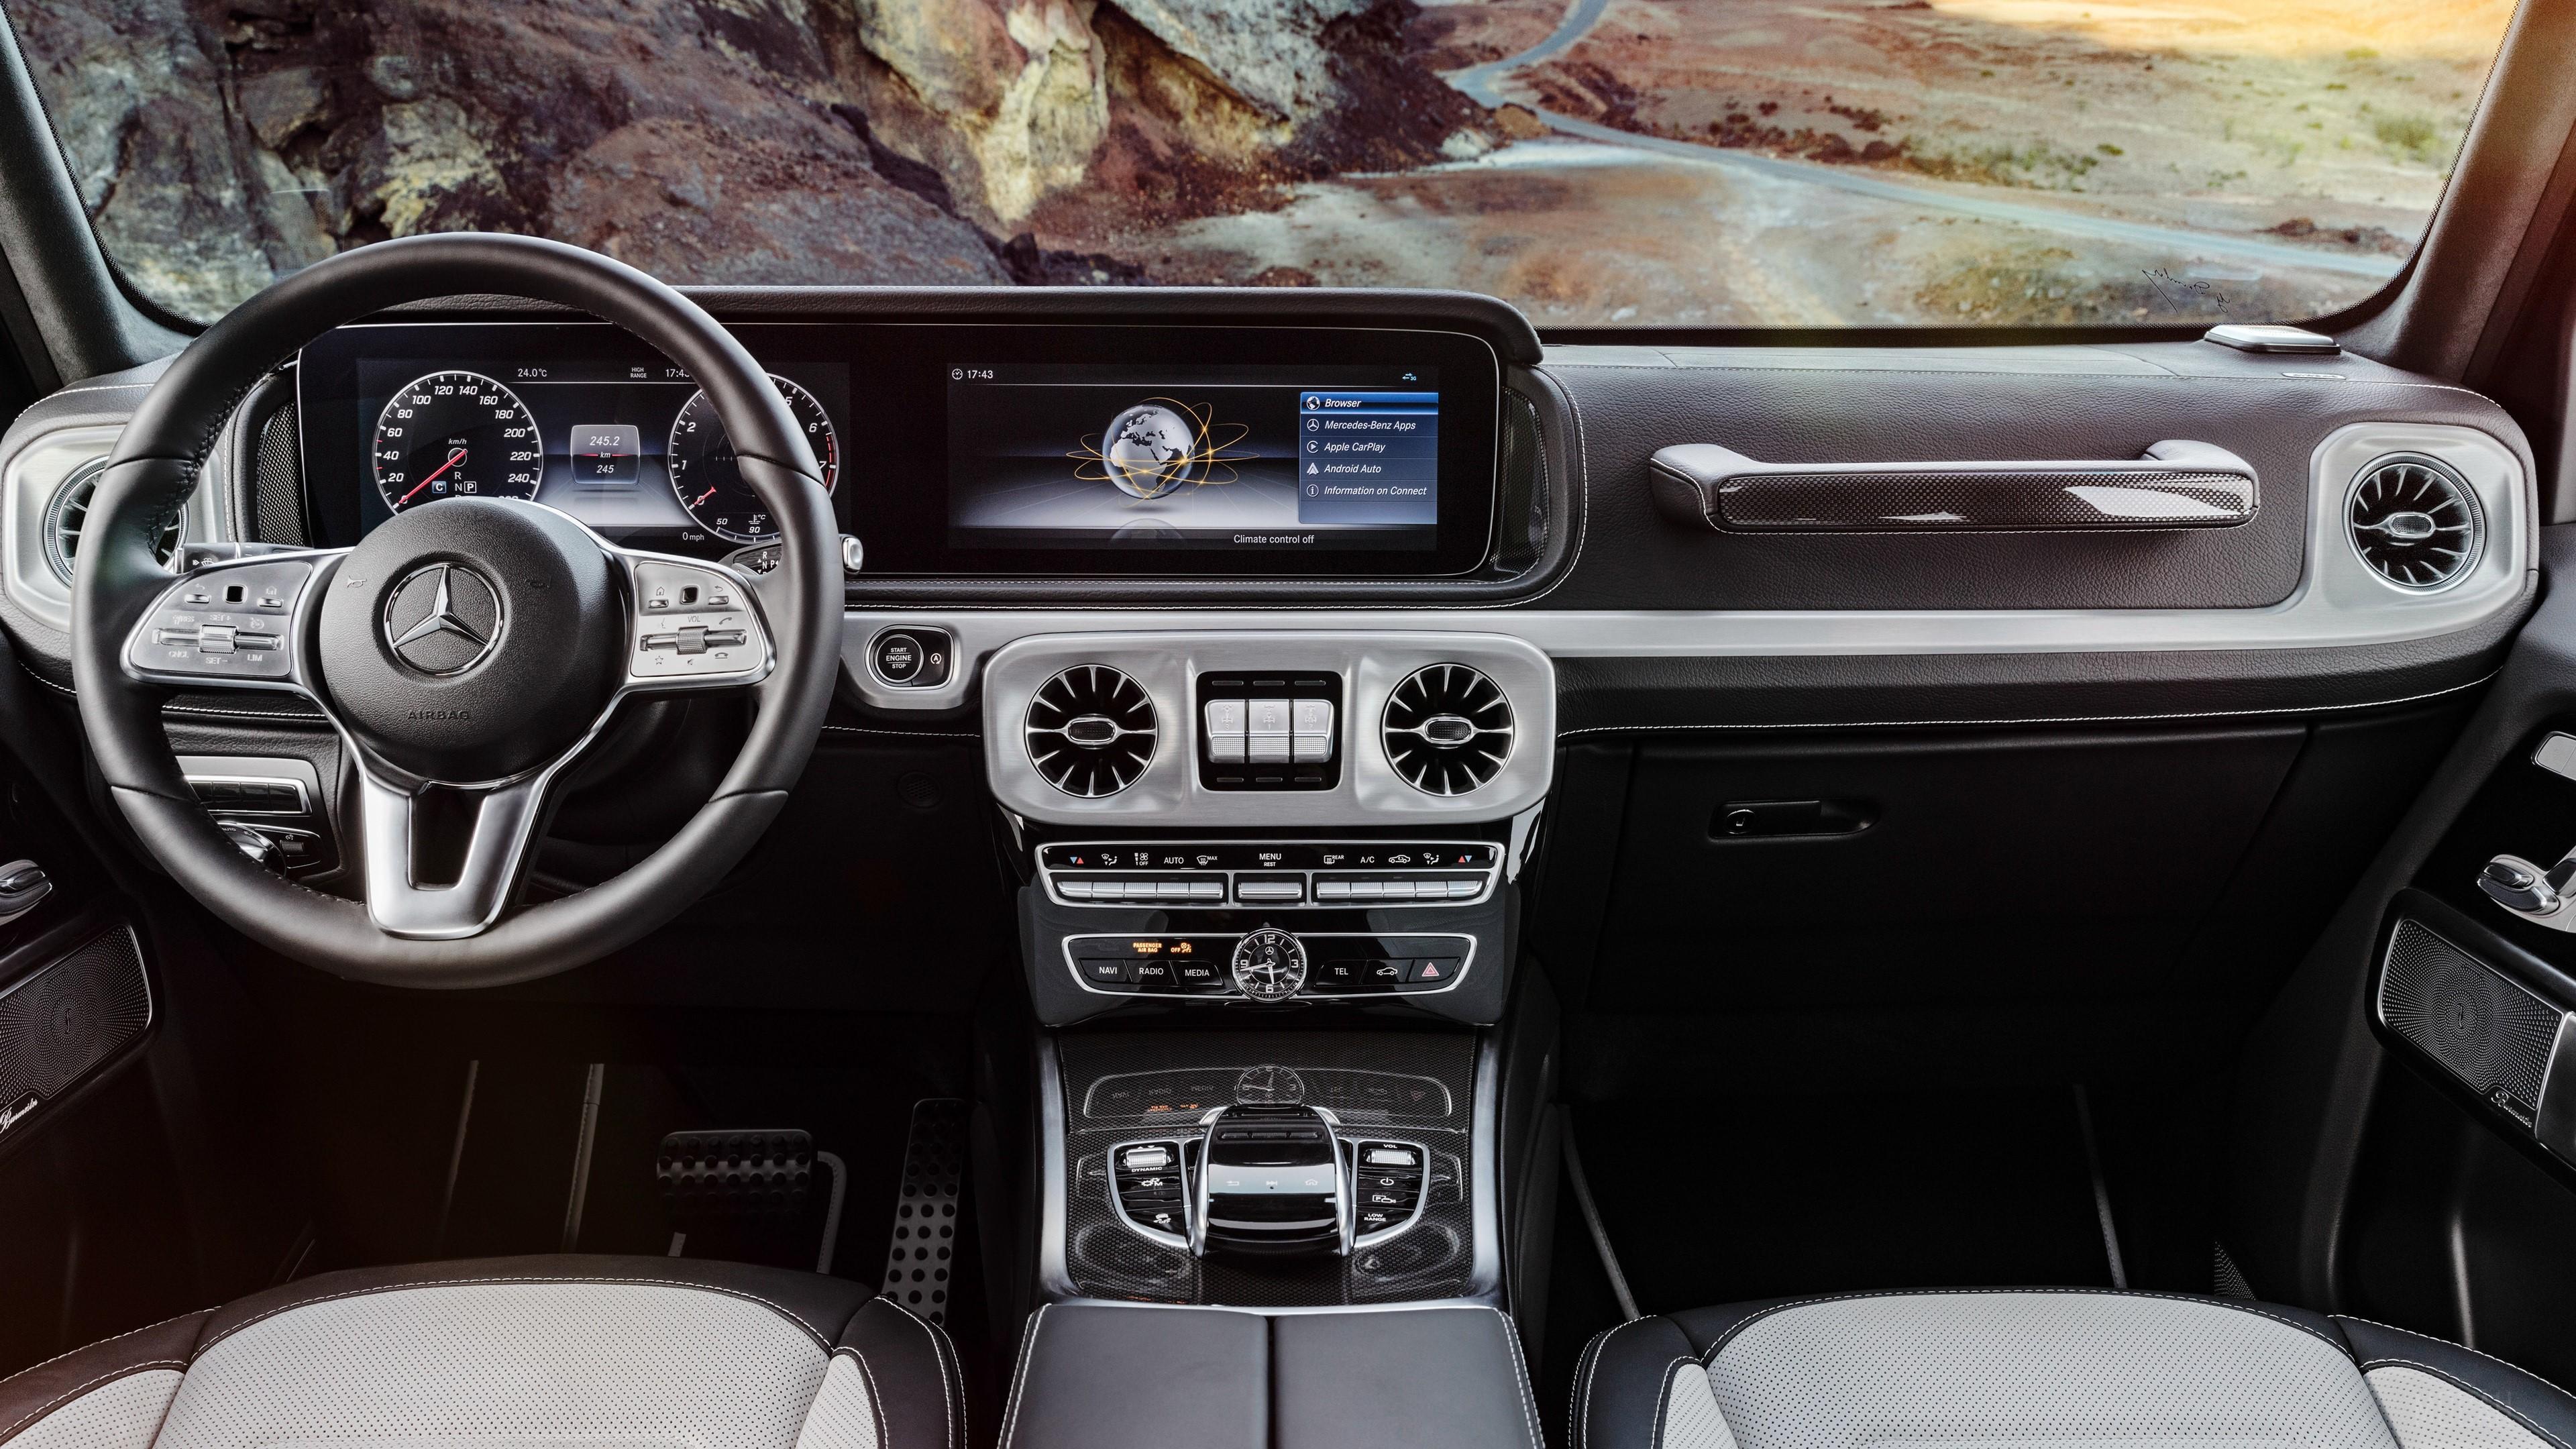 HD wallpaper, 2019 Mercedes G Class Interior 4K